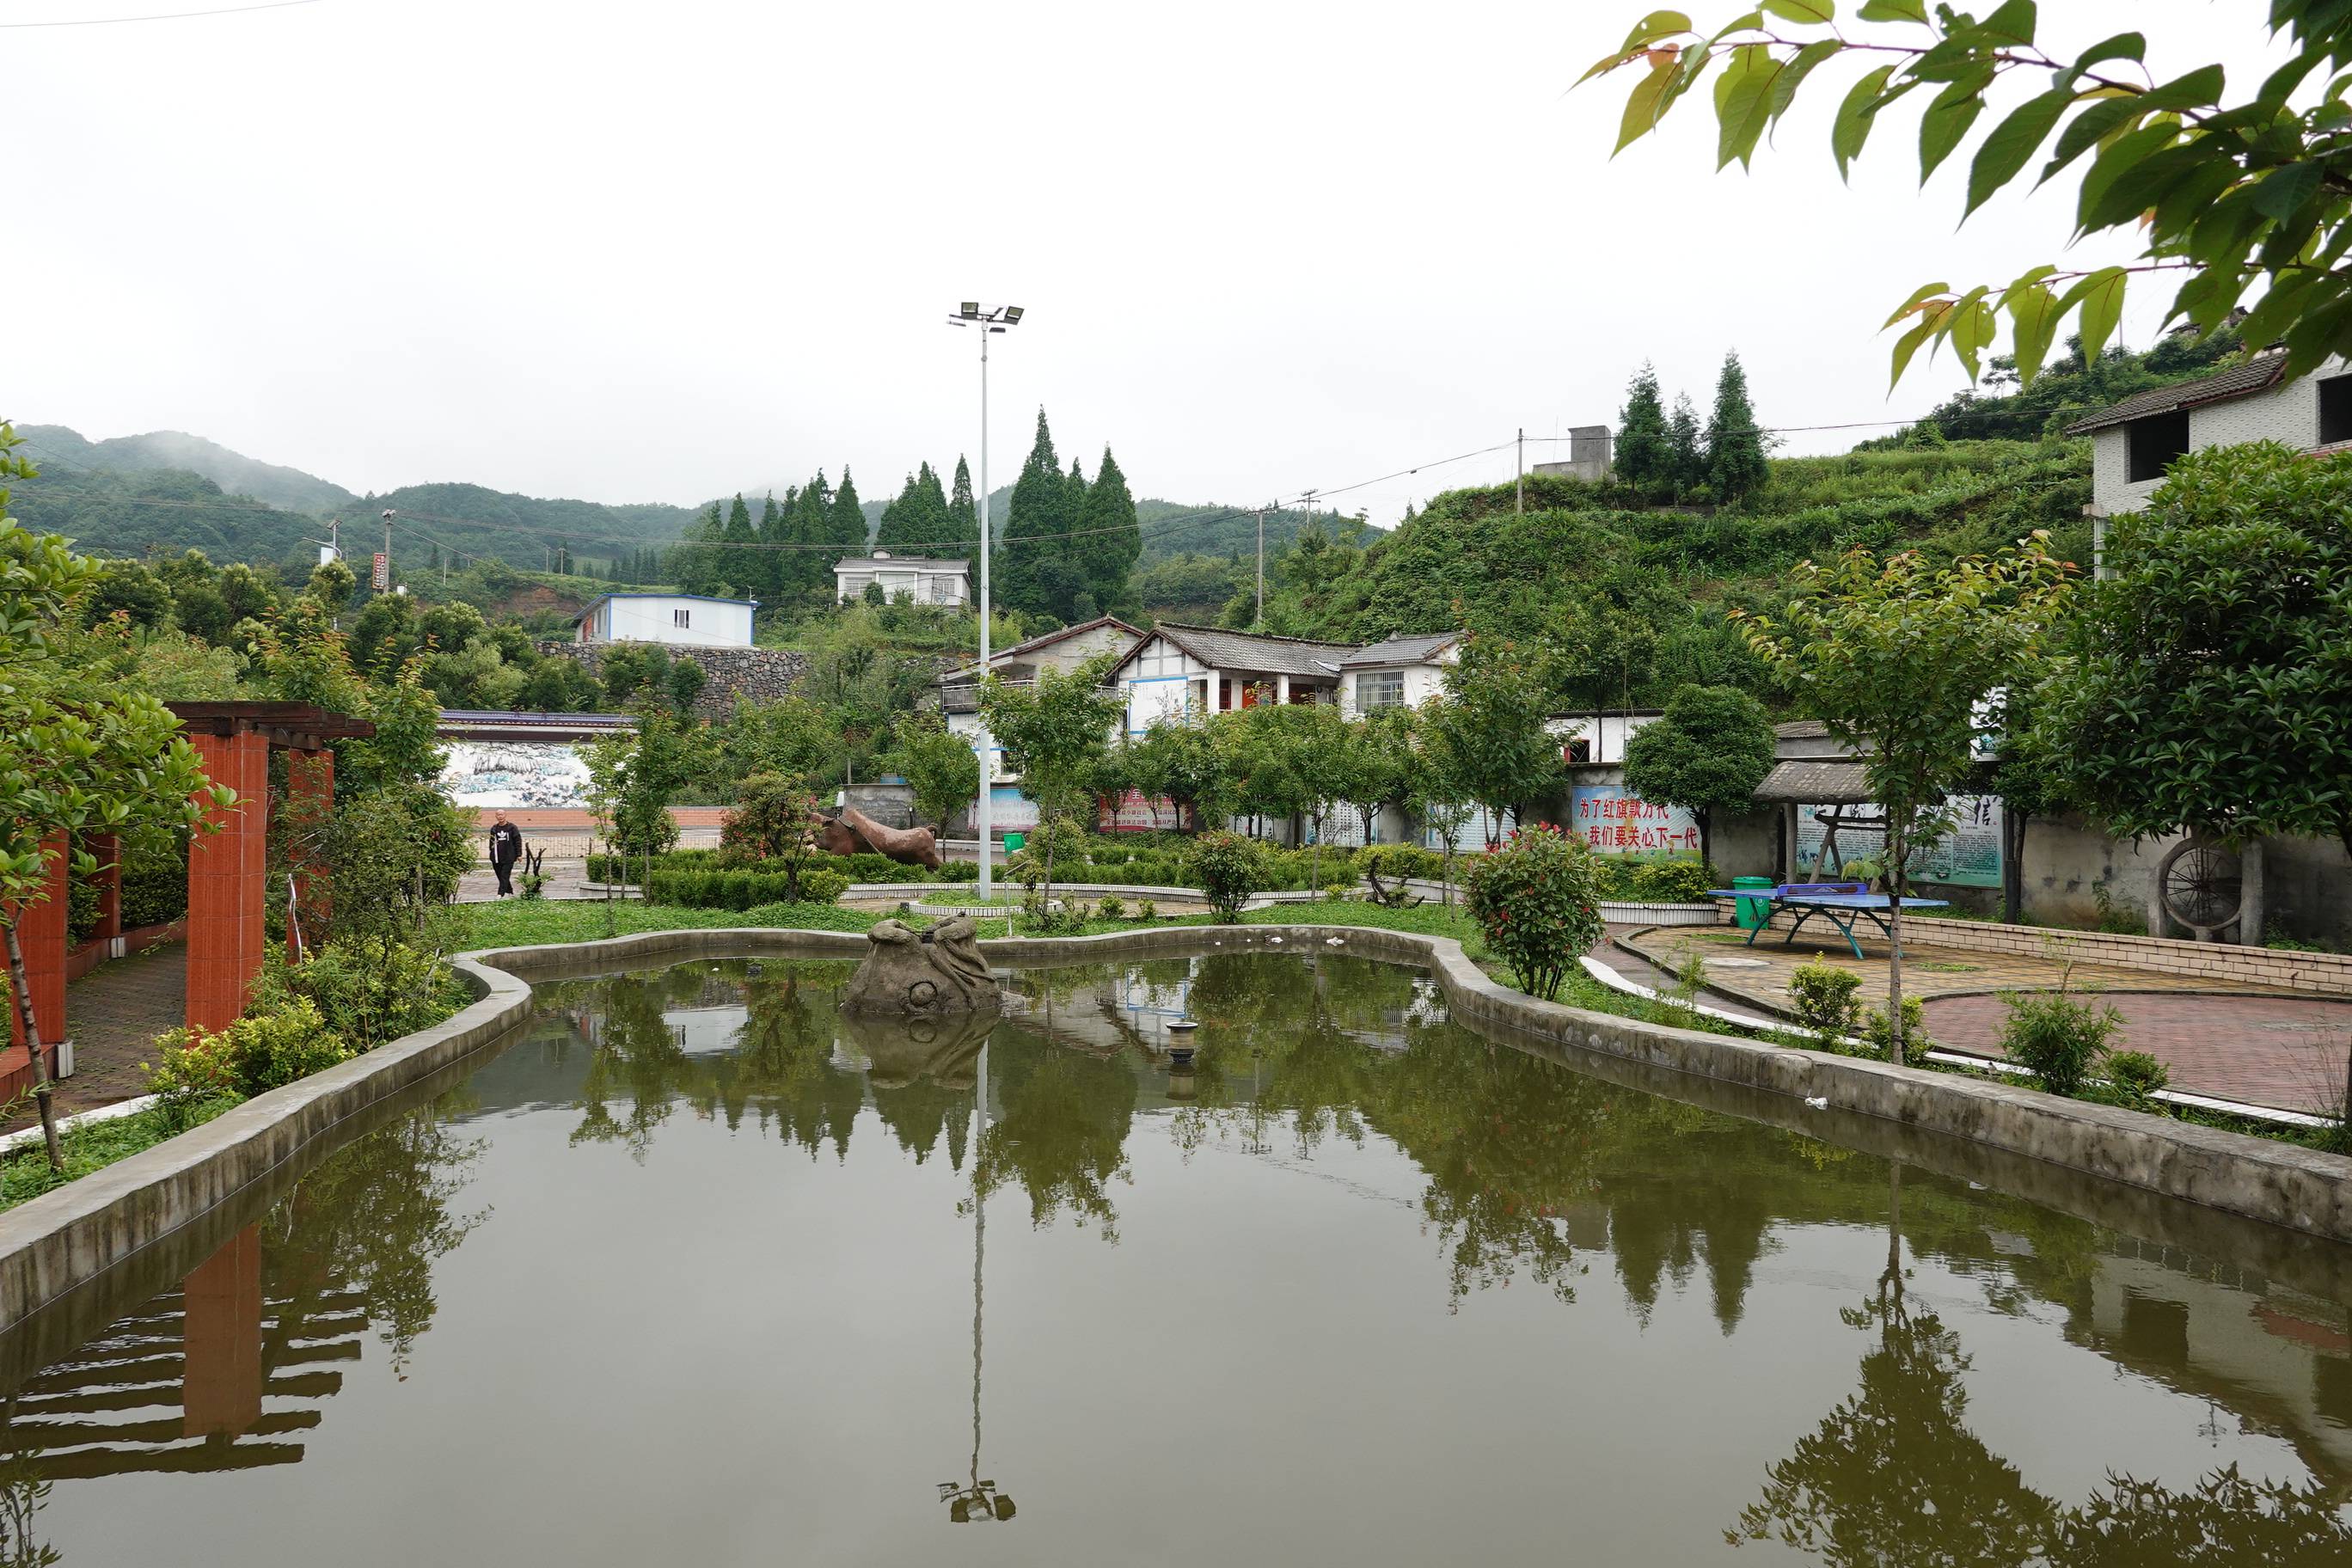 原创实拍贵州山村里的“桃源”生活，庭院美丽如花园，人均收入超万元